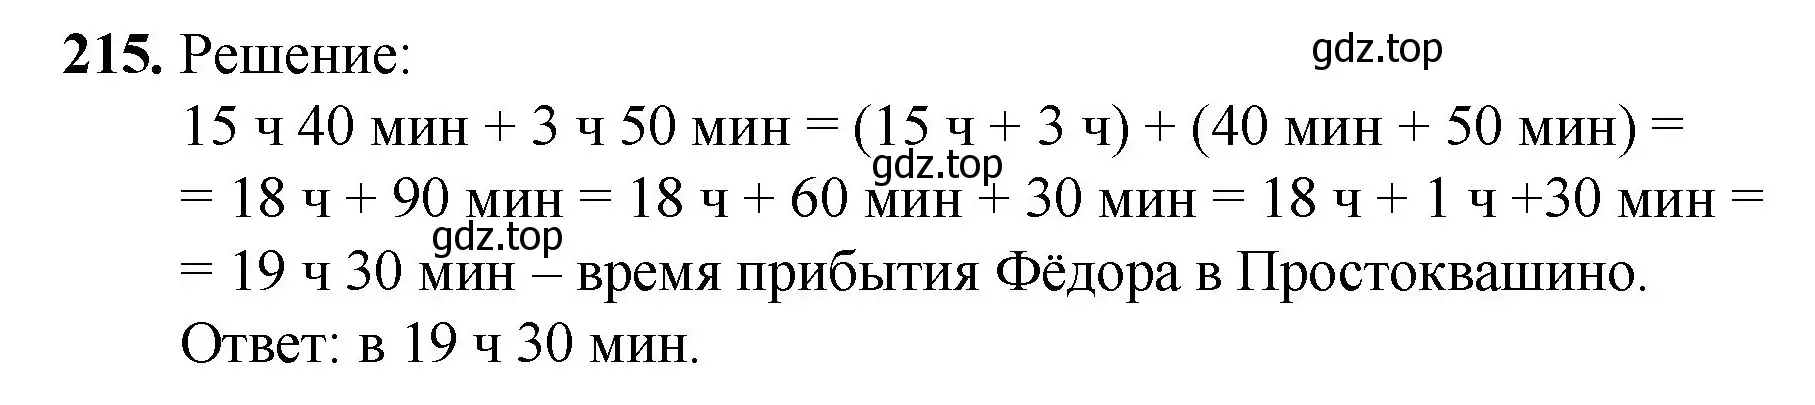 Решение номер 215 (страница 59) гдз по математике 5 класс Мерзляк, Полонский, учебник